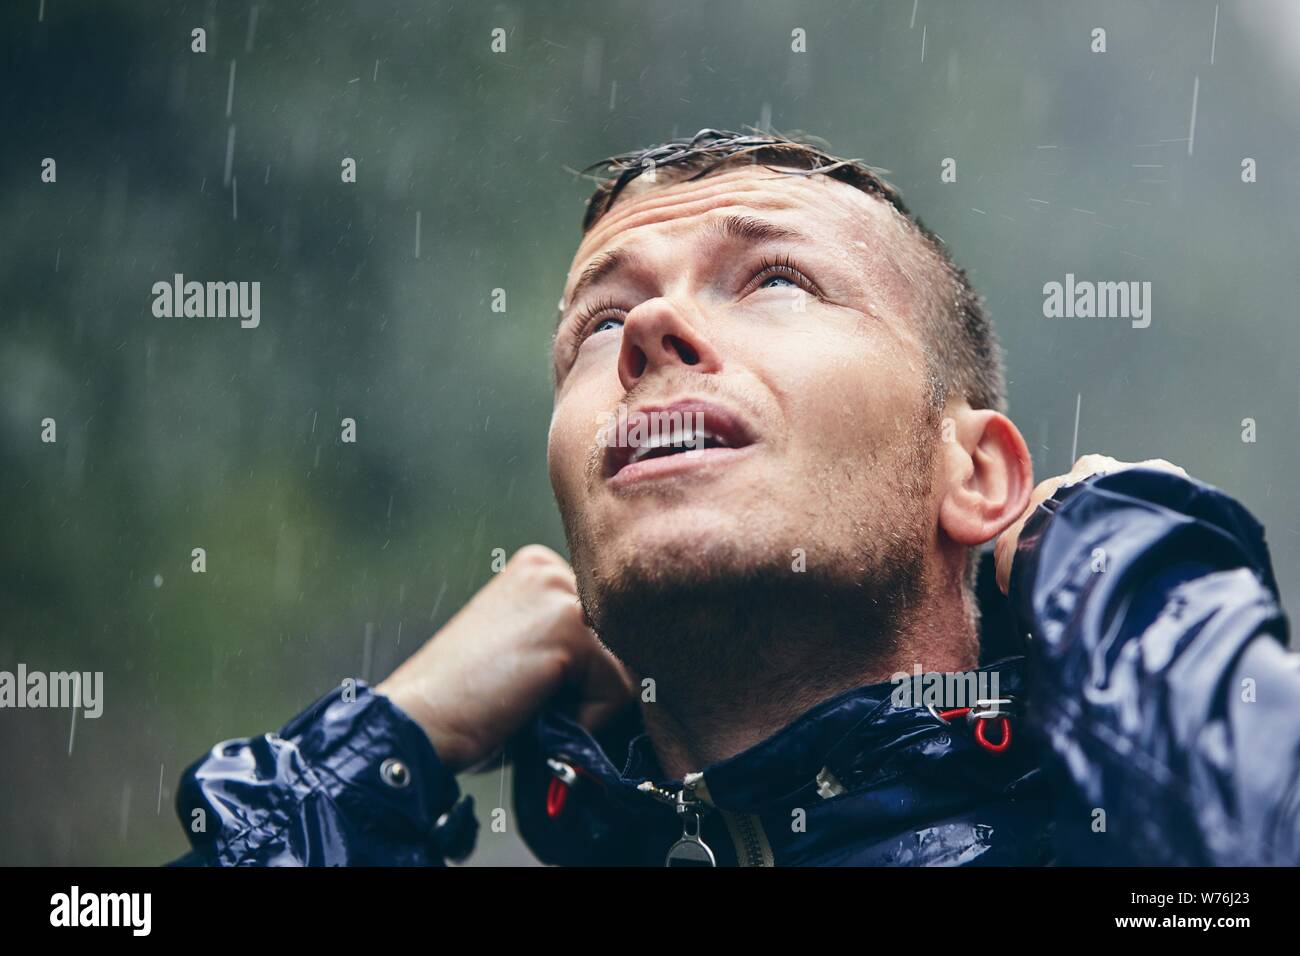 Reise bei schlechtem Wetter. Portrait des jungen Mannes in Durchnäßte Jacke im starken Regen. Stockfoto